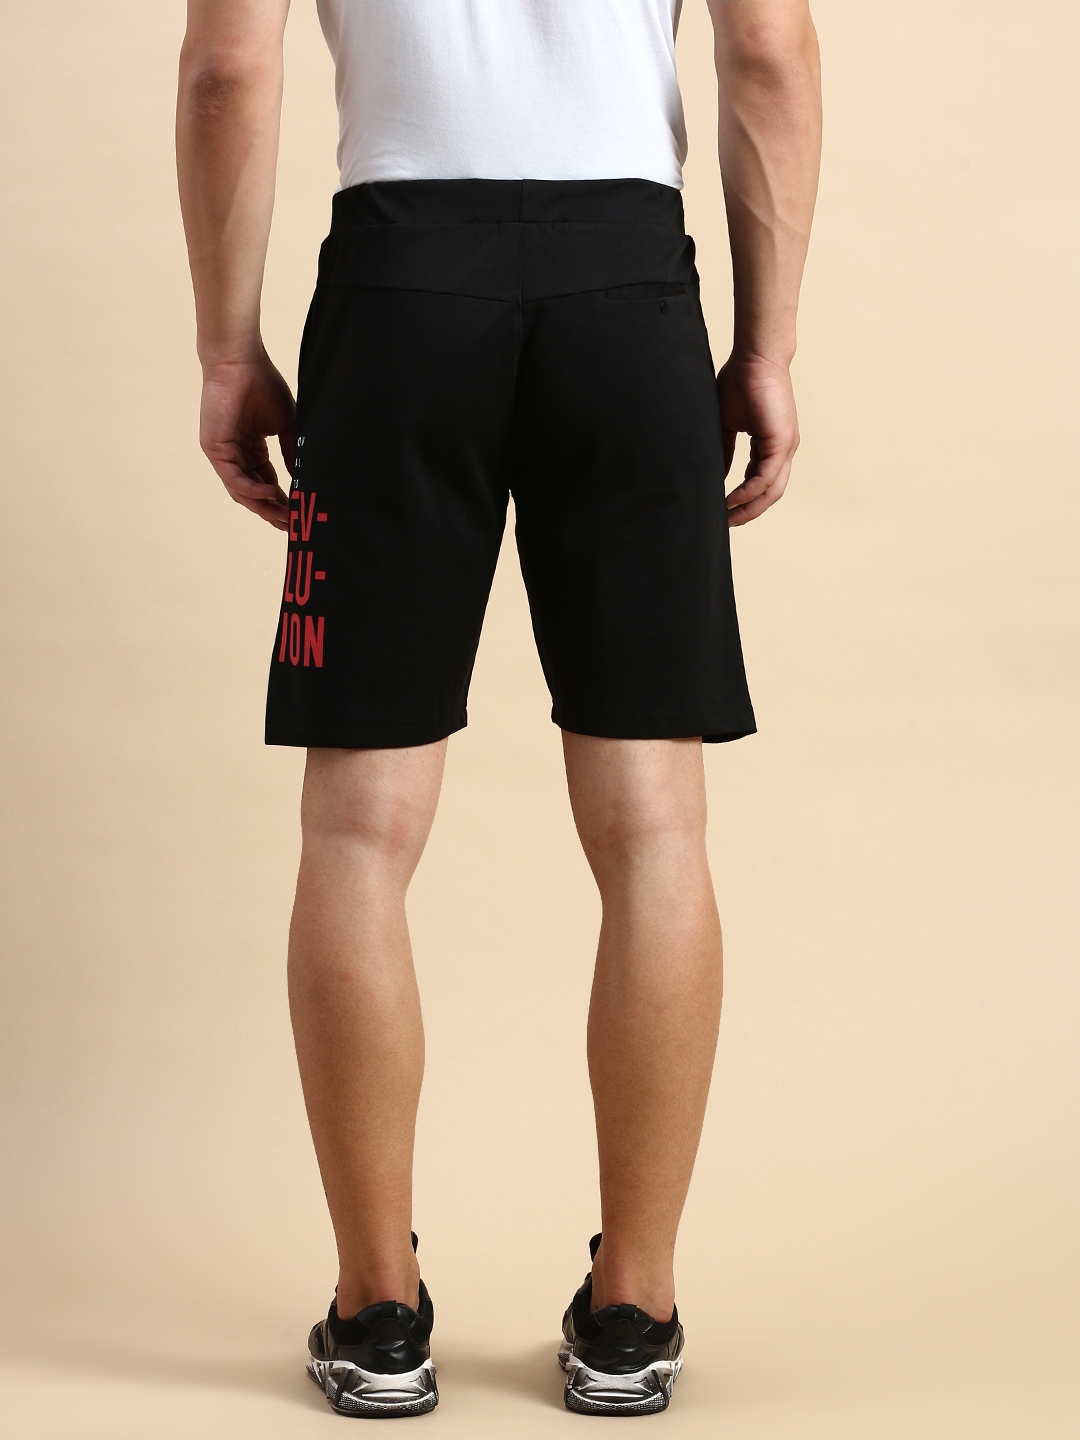 Showoff | SHOWOFF Men's Solid Black Knee Length Regular Shorts 3